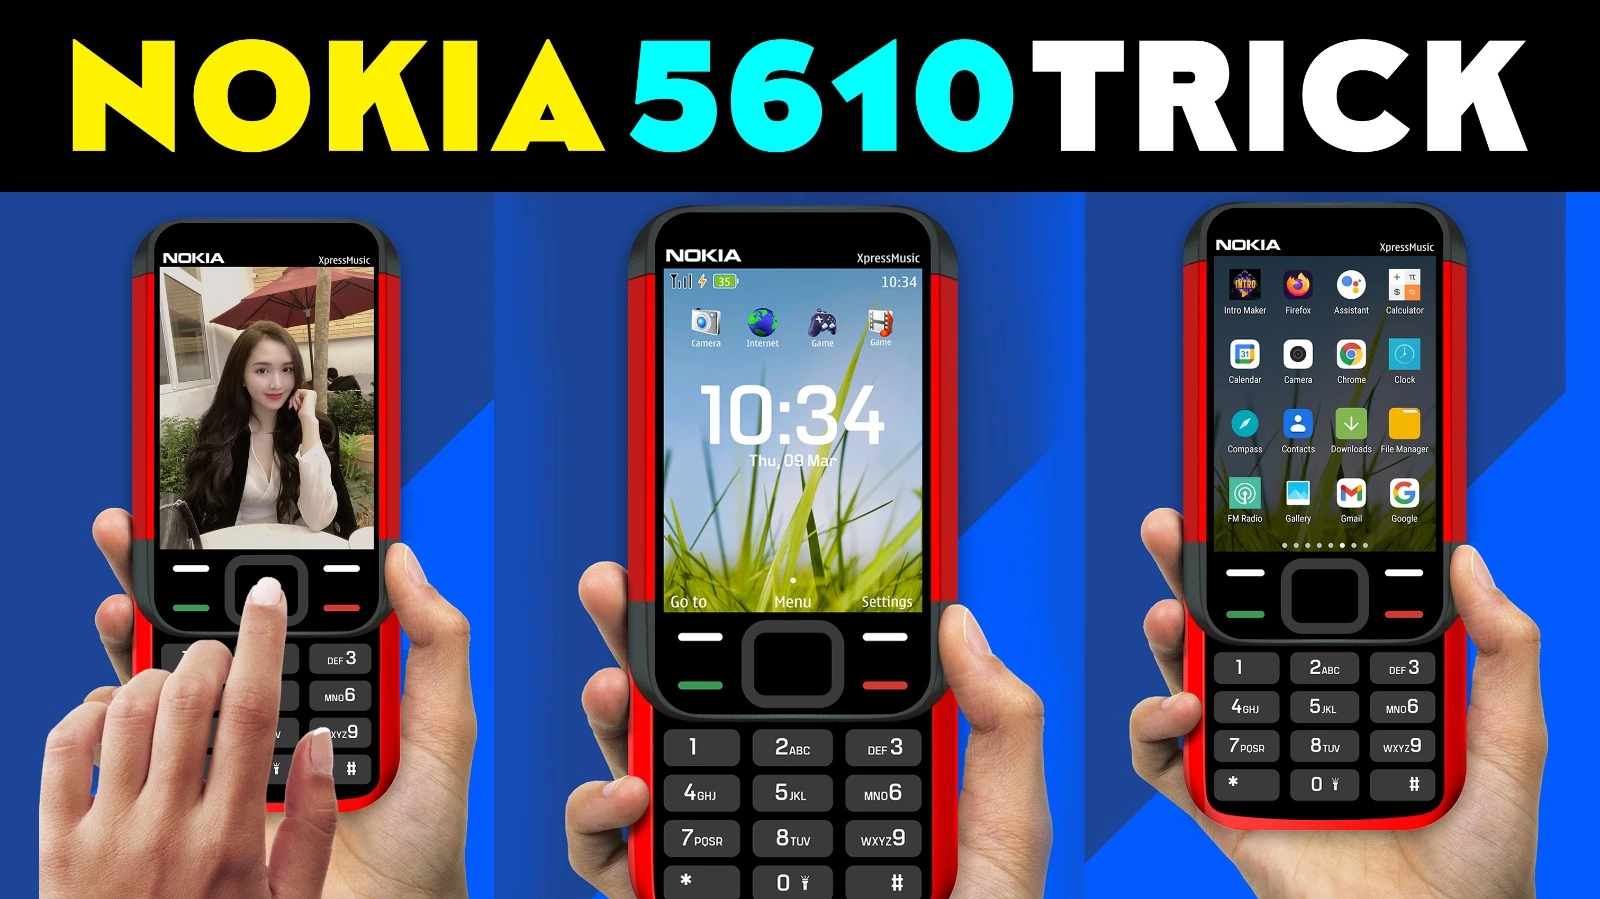 TNshorts Nokia 5610